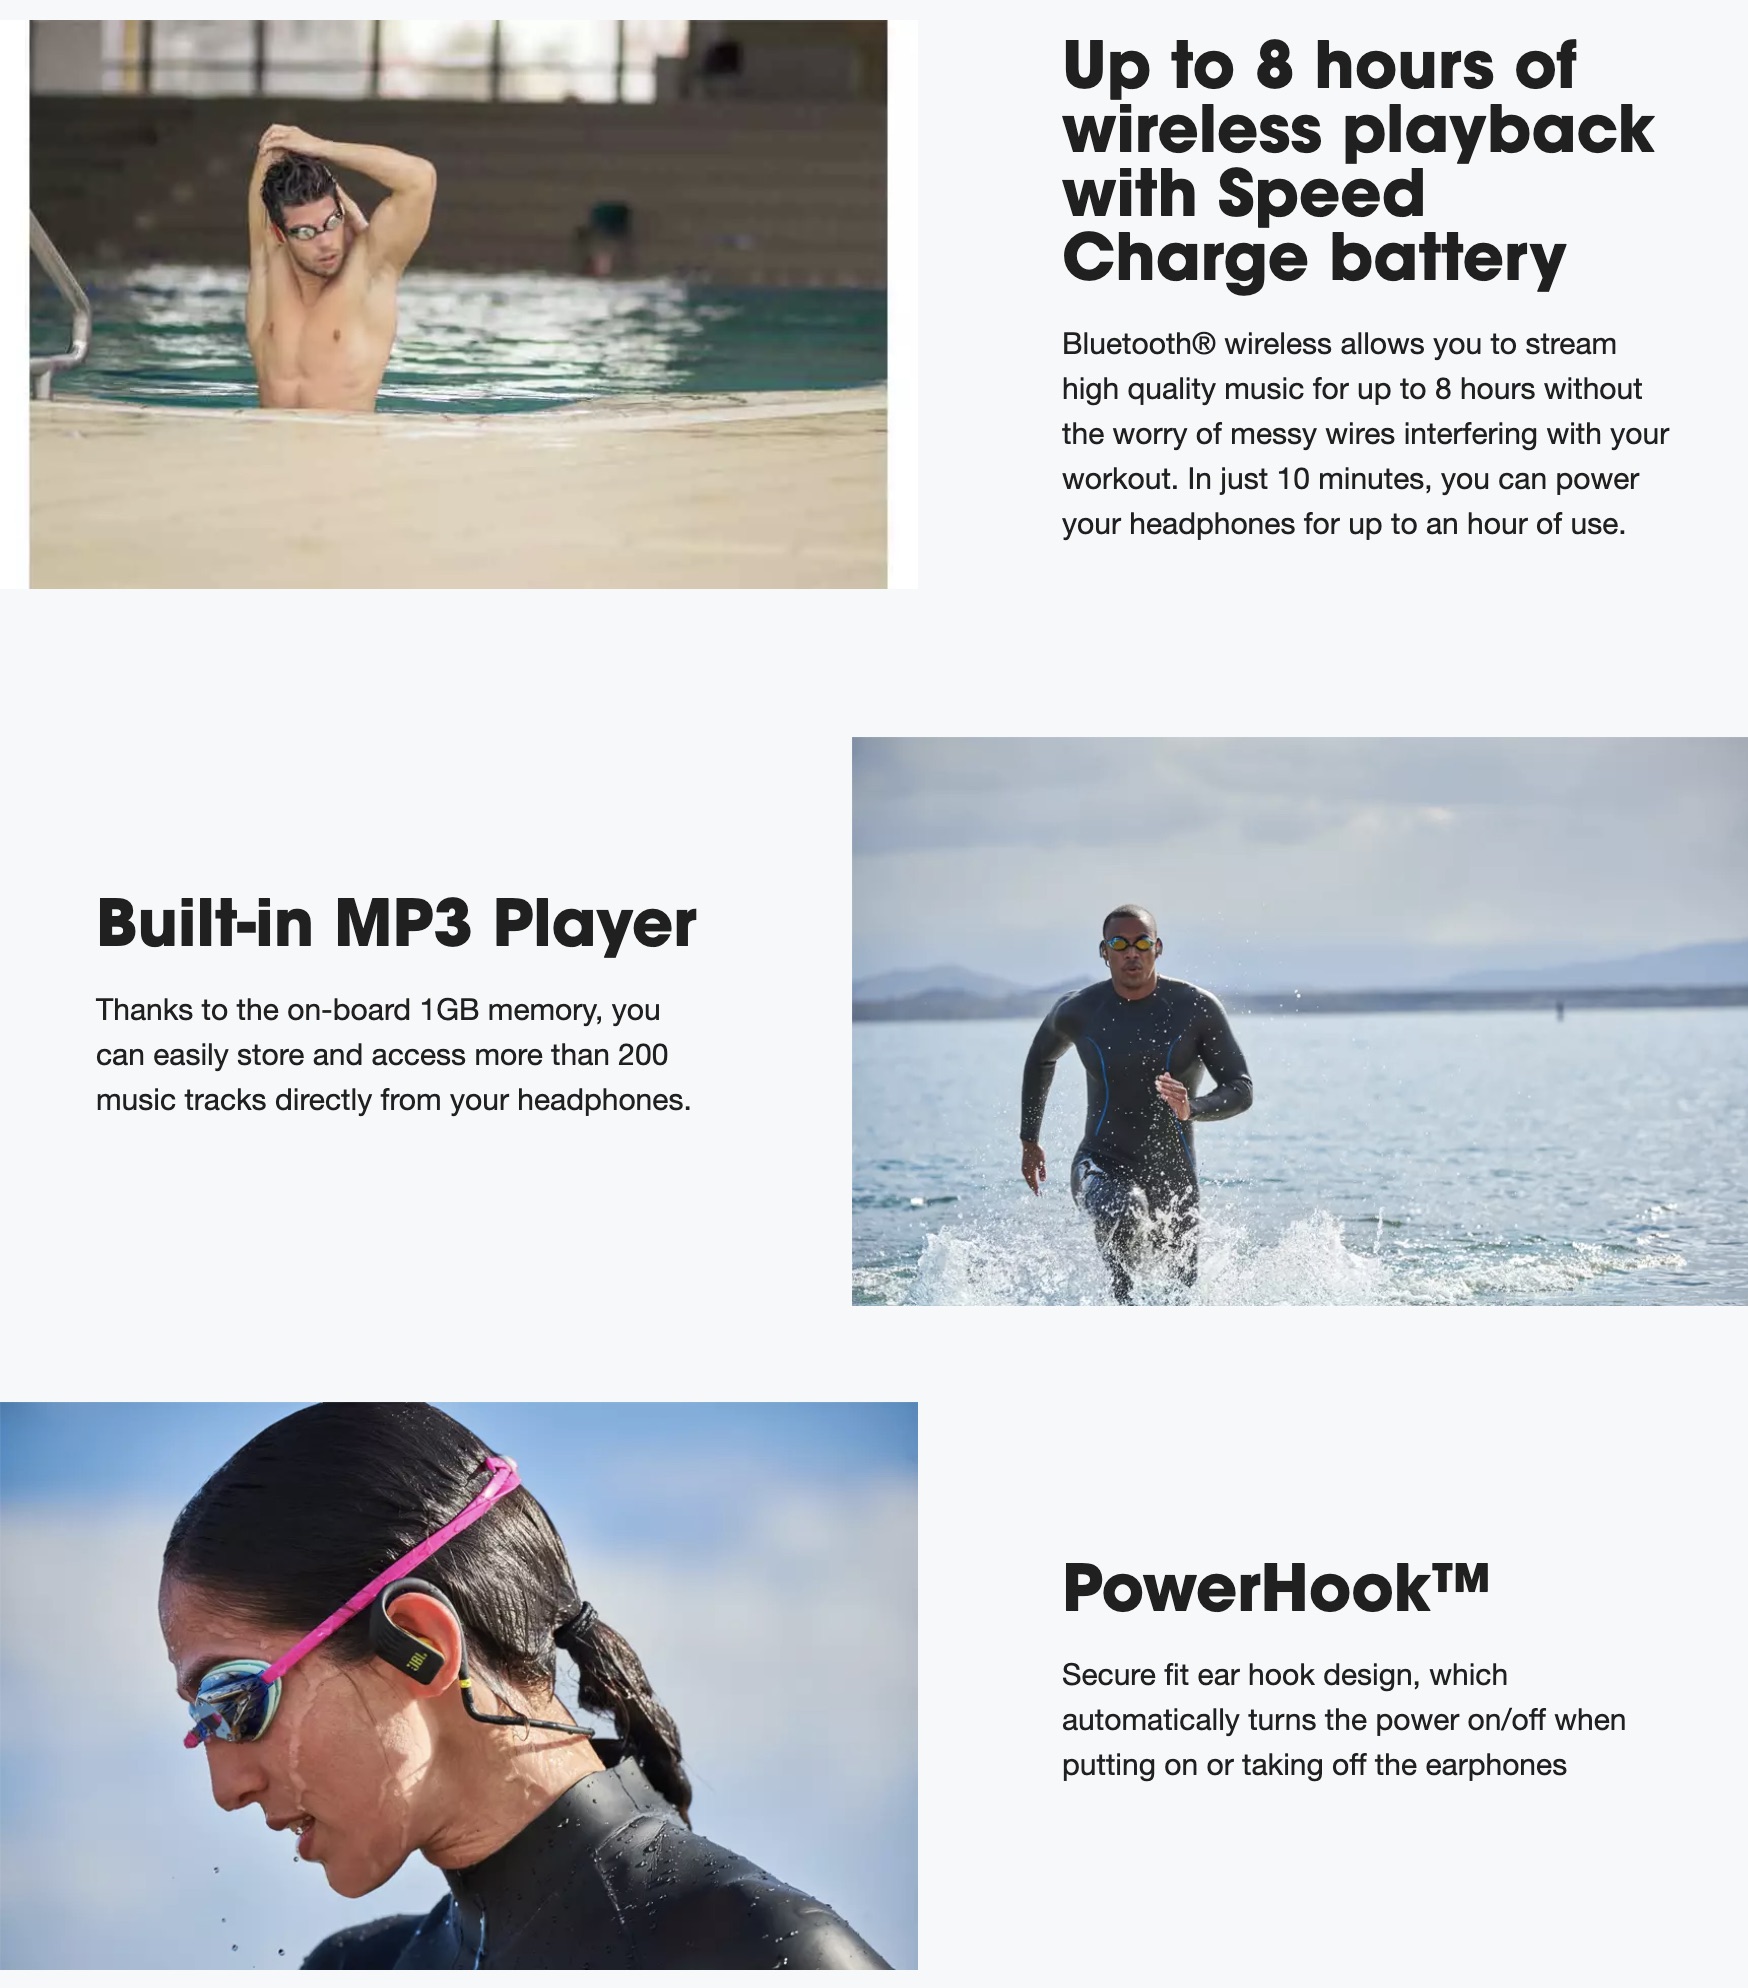 JBL-Endurance-DIVE-Waterproof-Wireless-In-Ear-Sport-Headphones-With-MP3-Player-Description-1